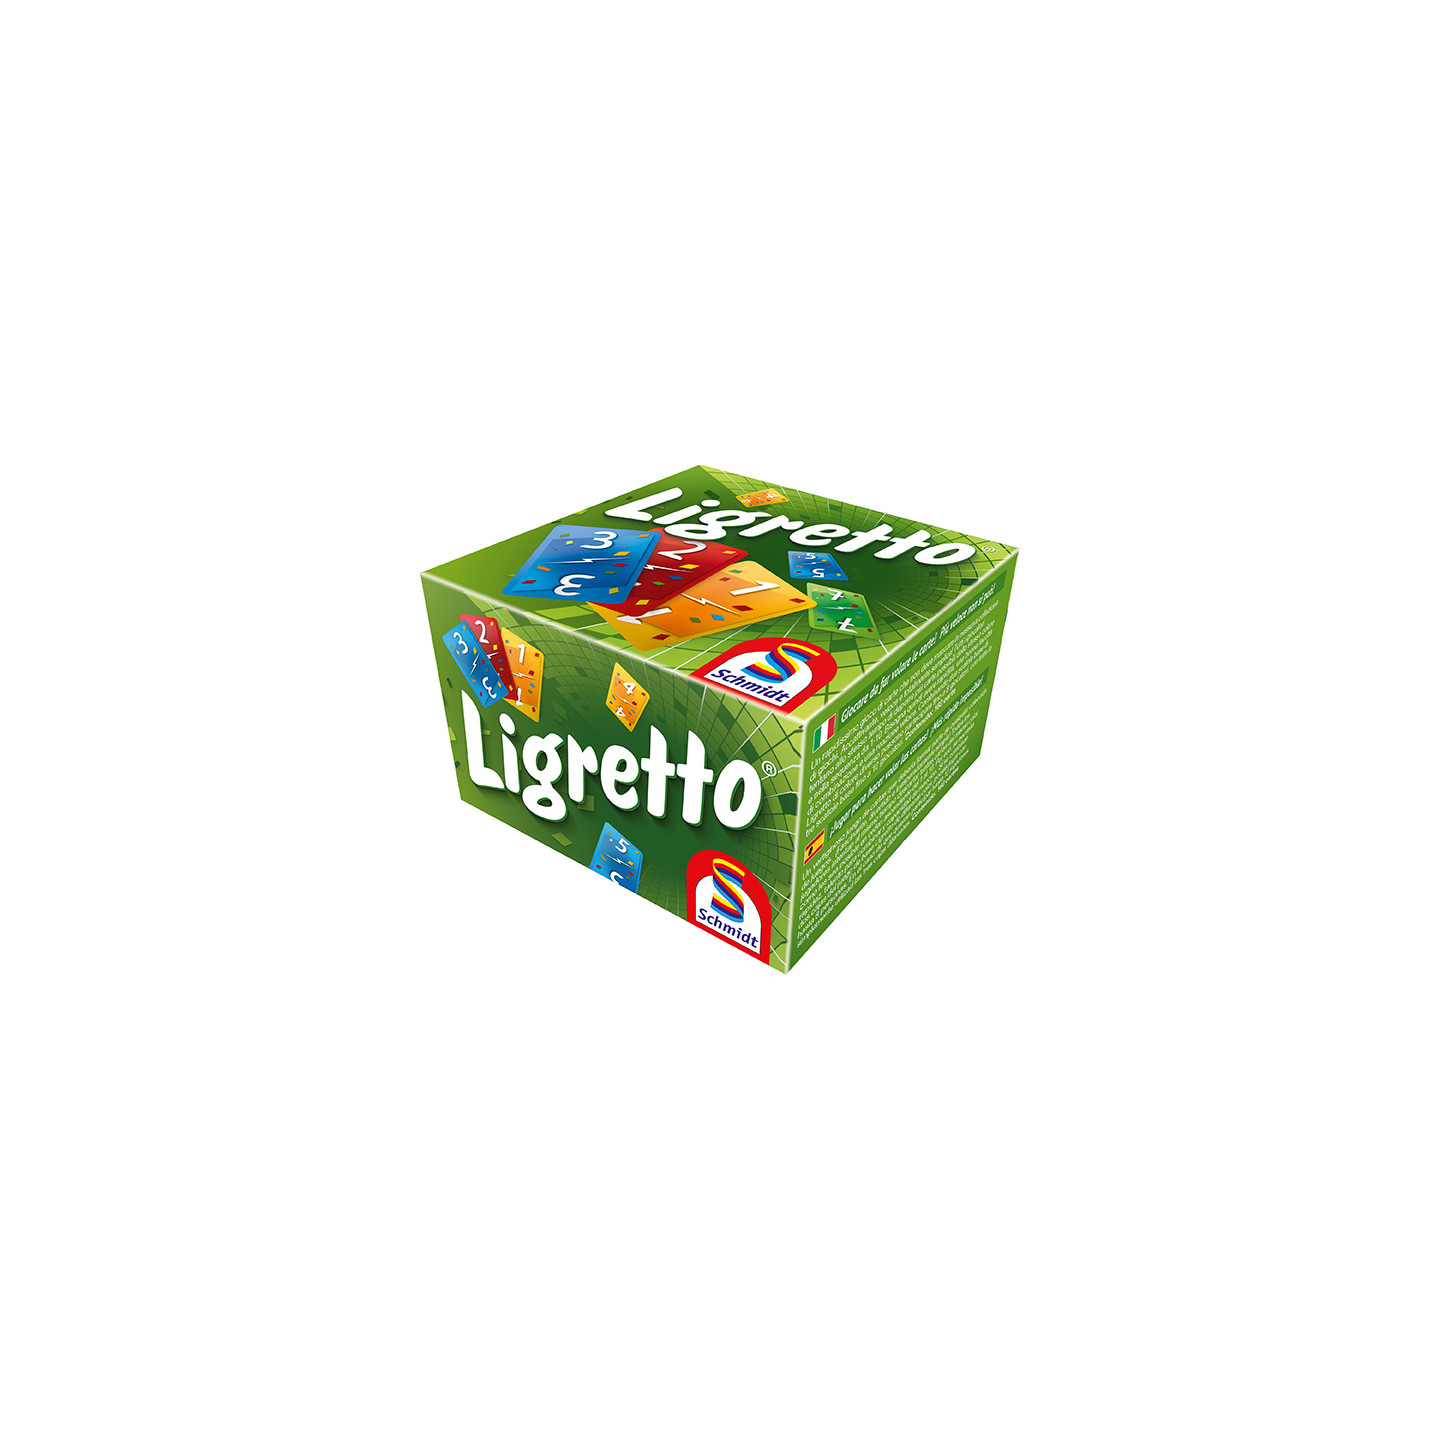 Ligretto, jeu de société Schimdt